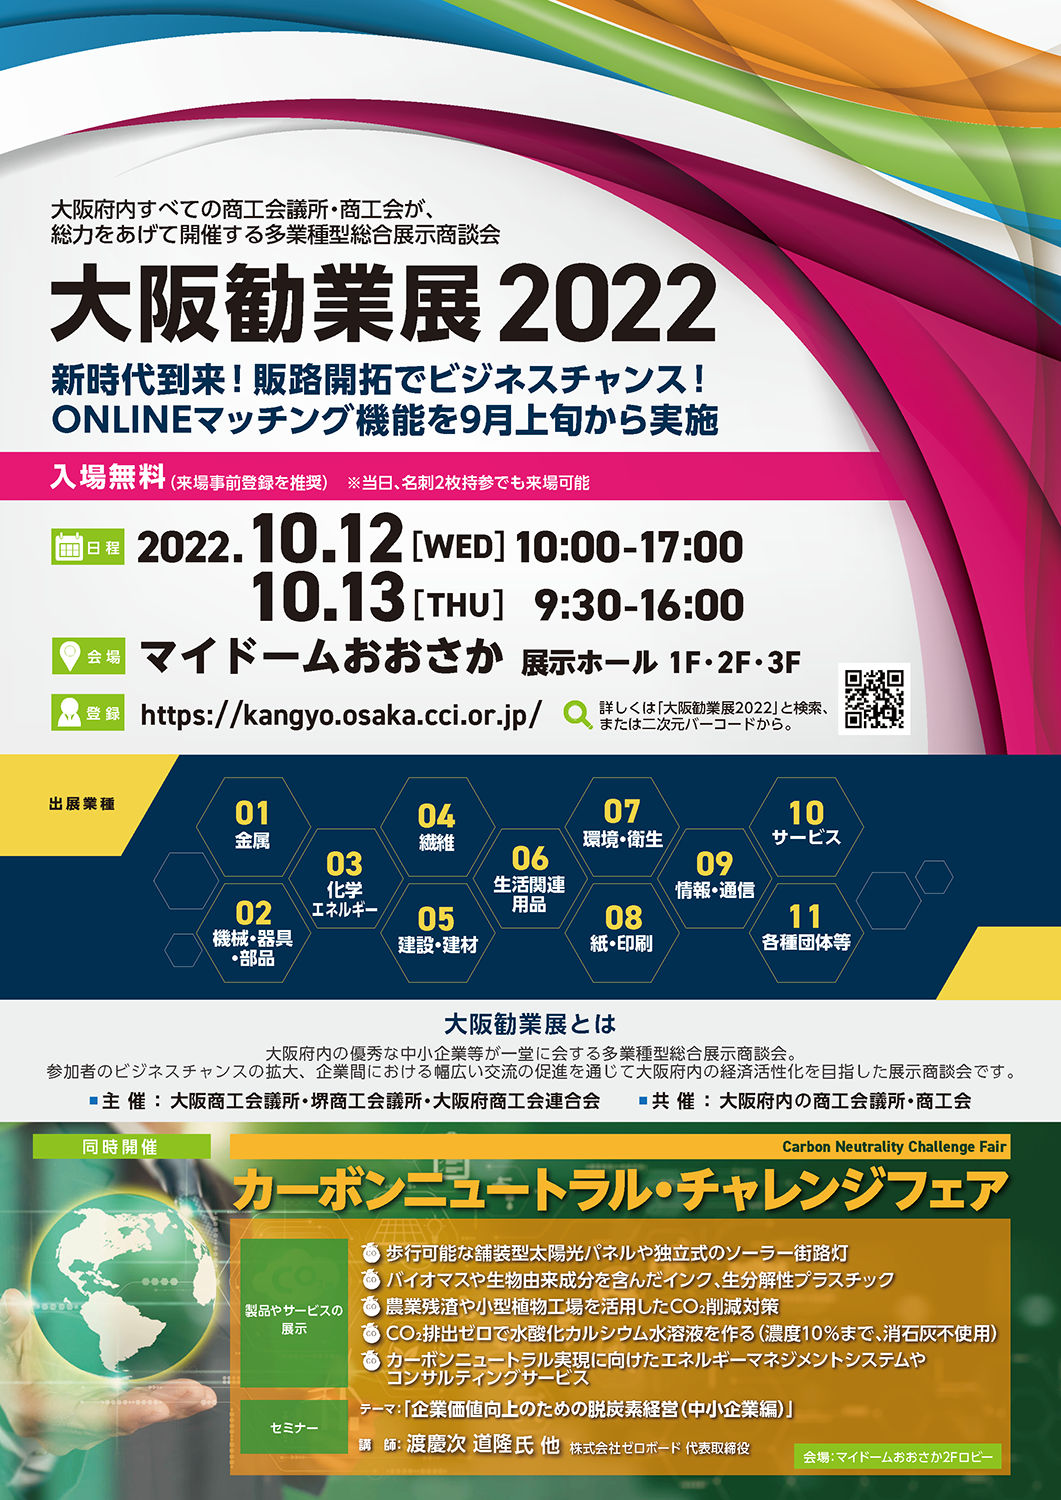 大阪勧業展2022